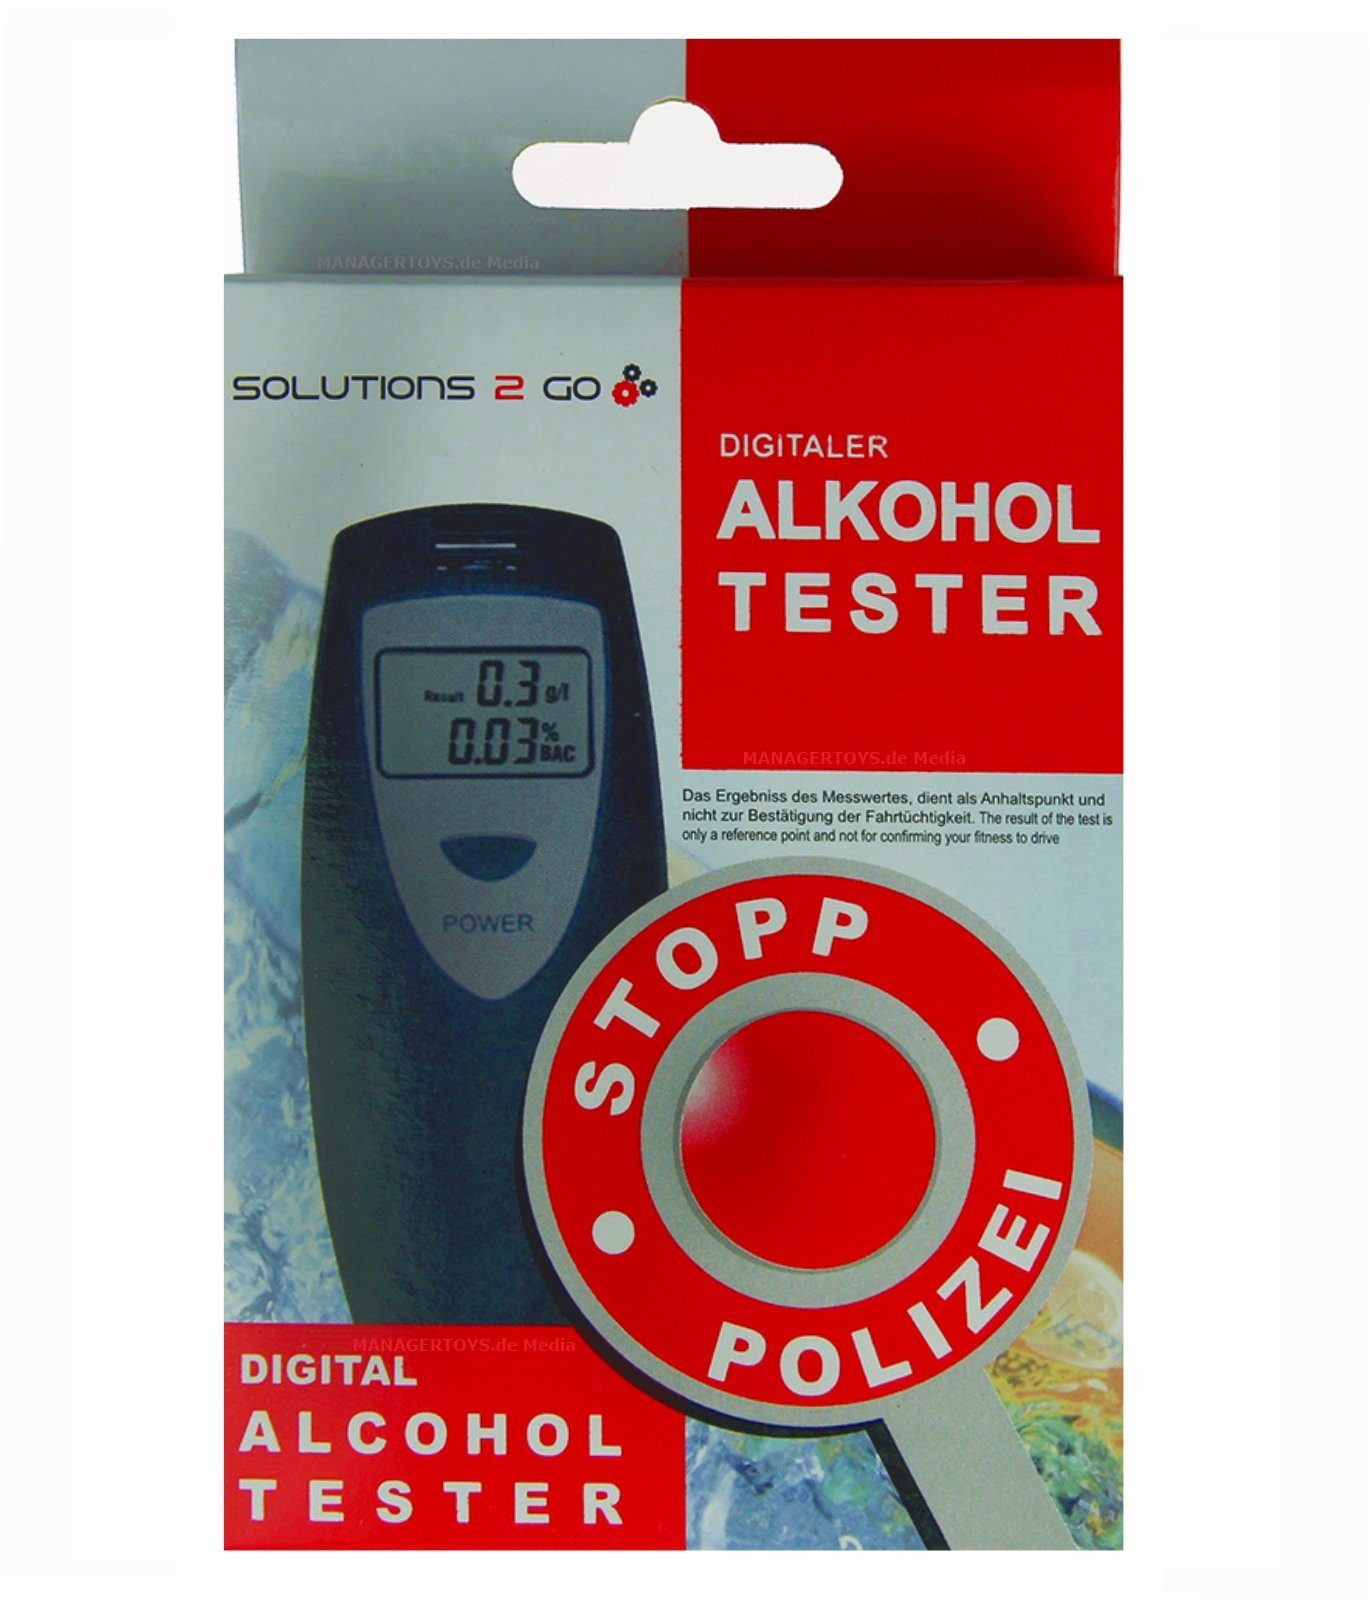 Alkoholtester Testsieger Polizeigenau Promille-Test Atem-Messgerät 12  Mundstücke